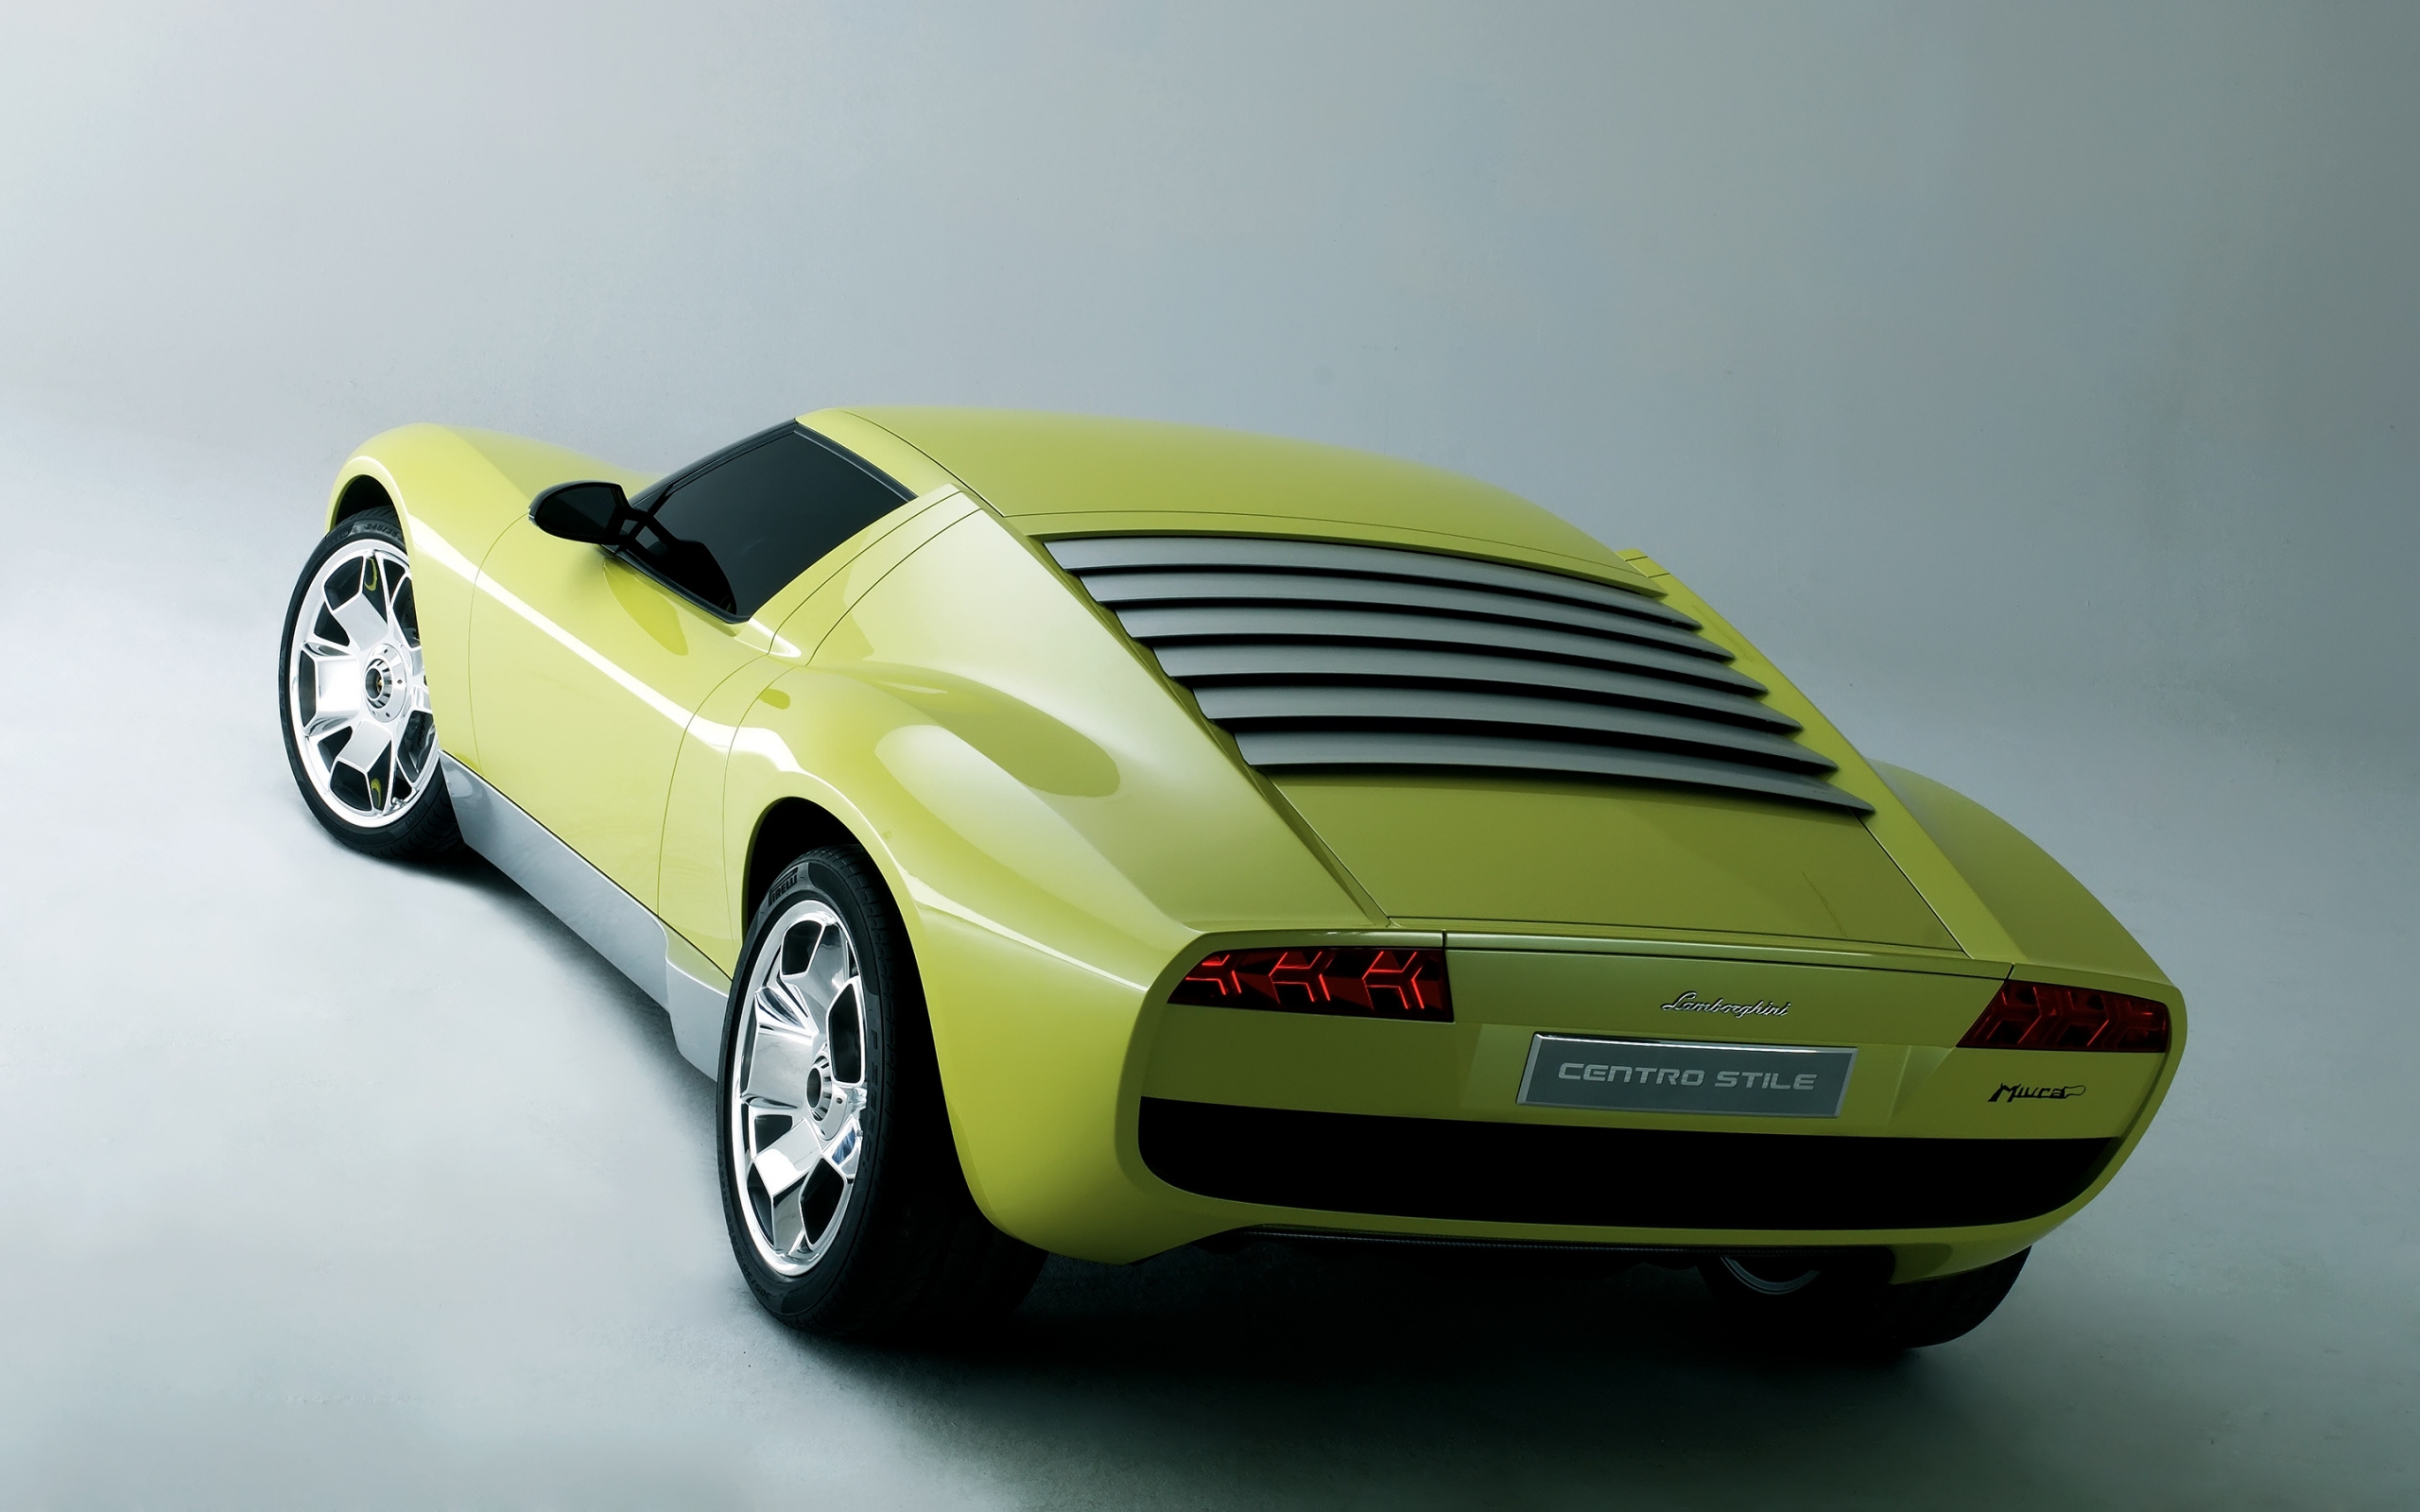 Lamborghini Miura Concept Rear for 2560 x 1600 widescreen resolution